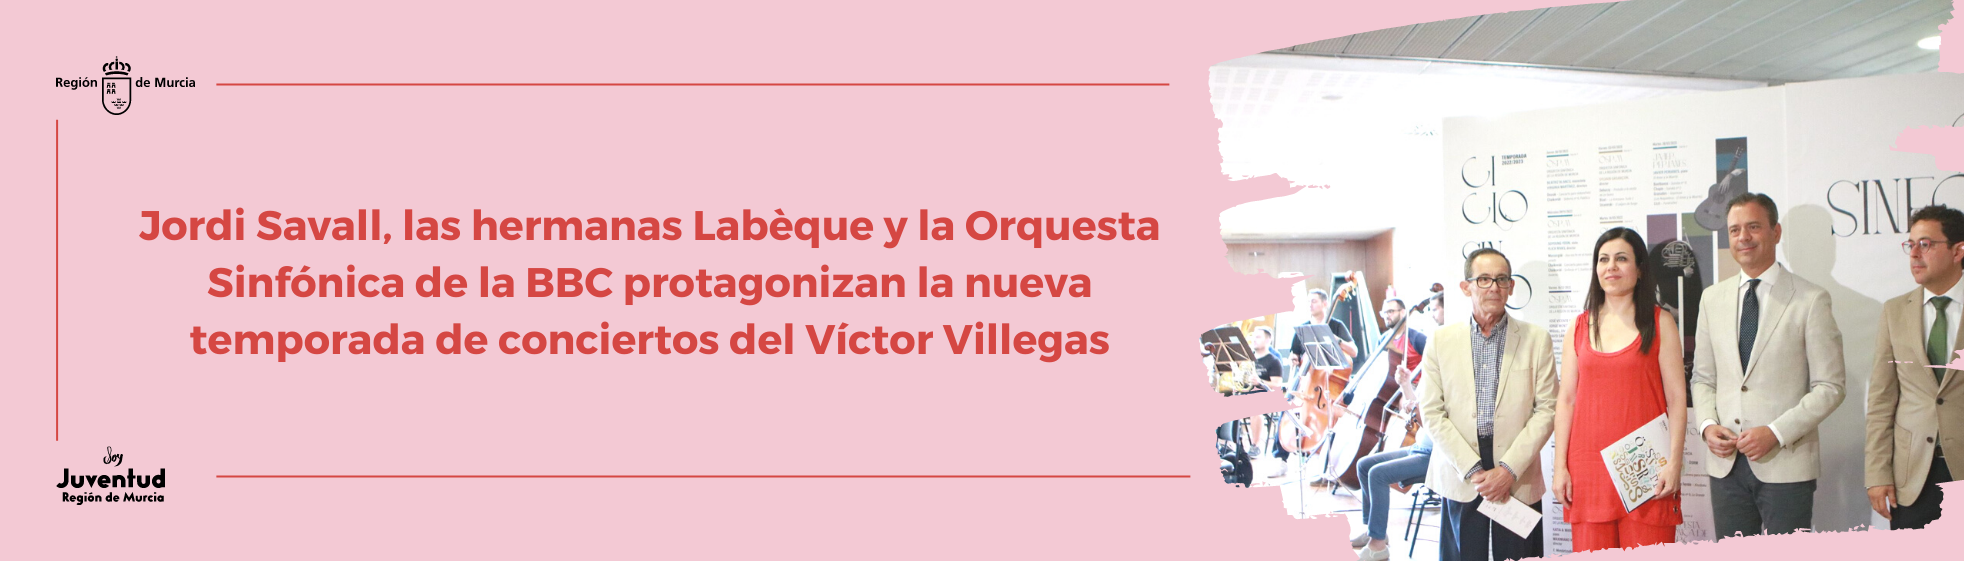 Jordi Savall, las hermanas Labèque y la Orquesta Sinfónica de la BBC protagonizan la nueva temporada de conciertos del Víctor Villegas